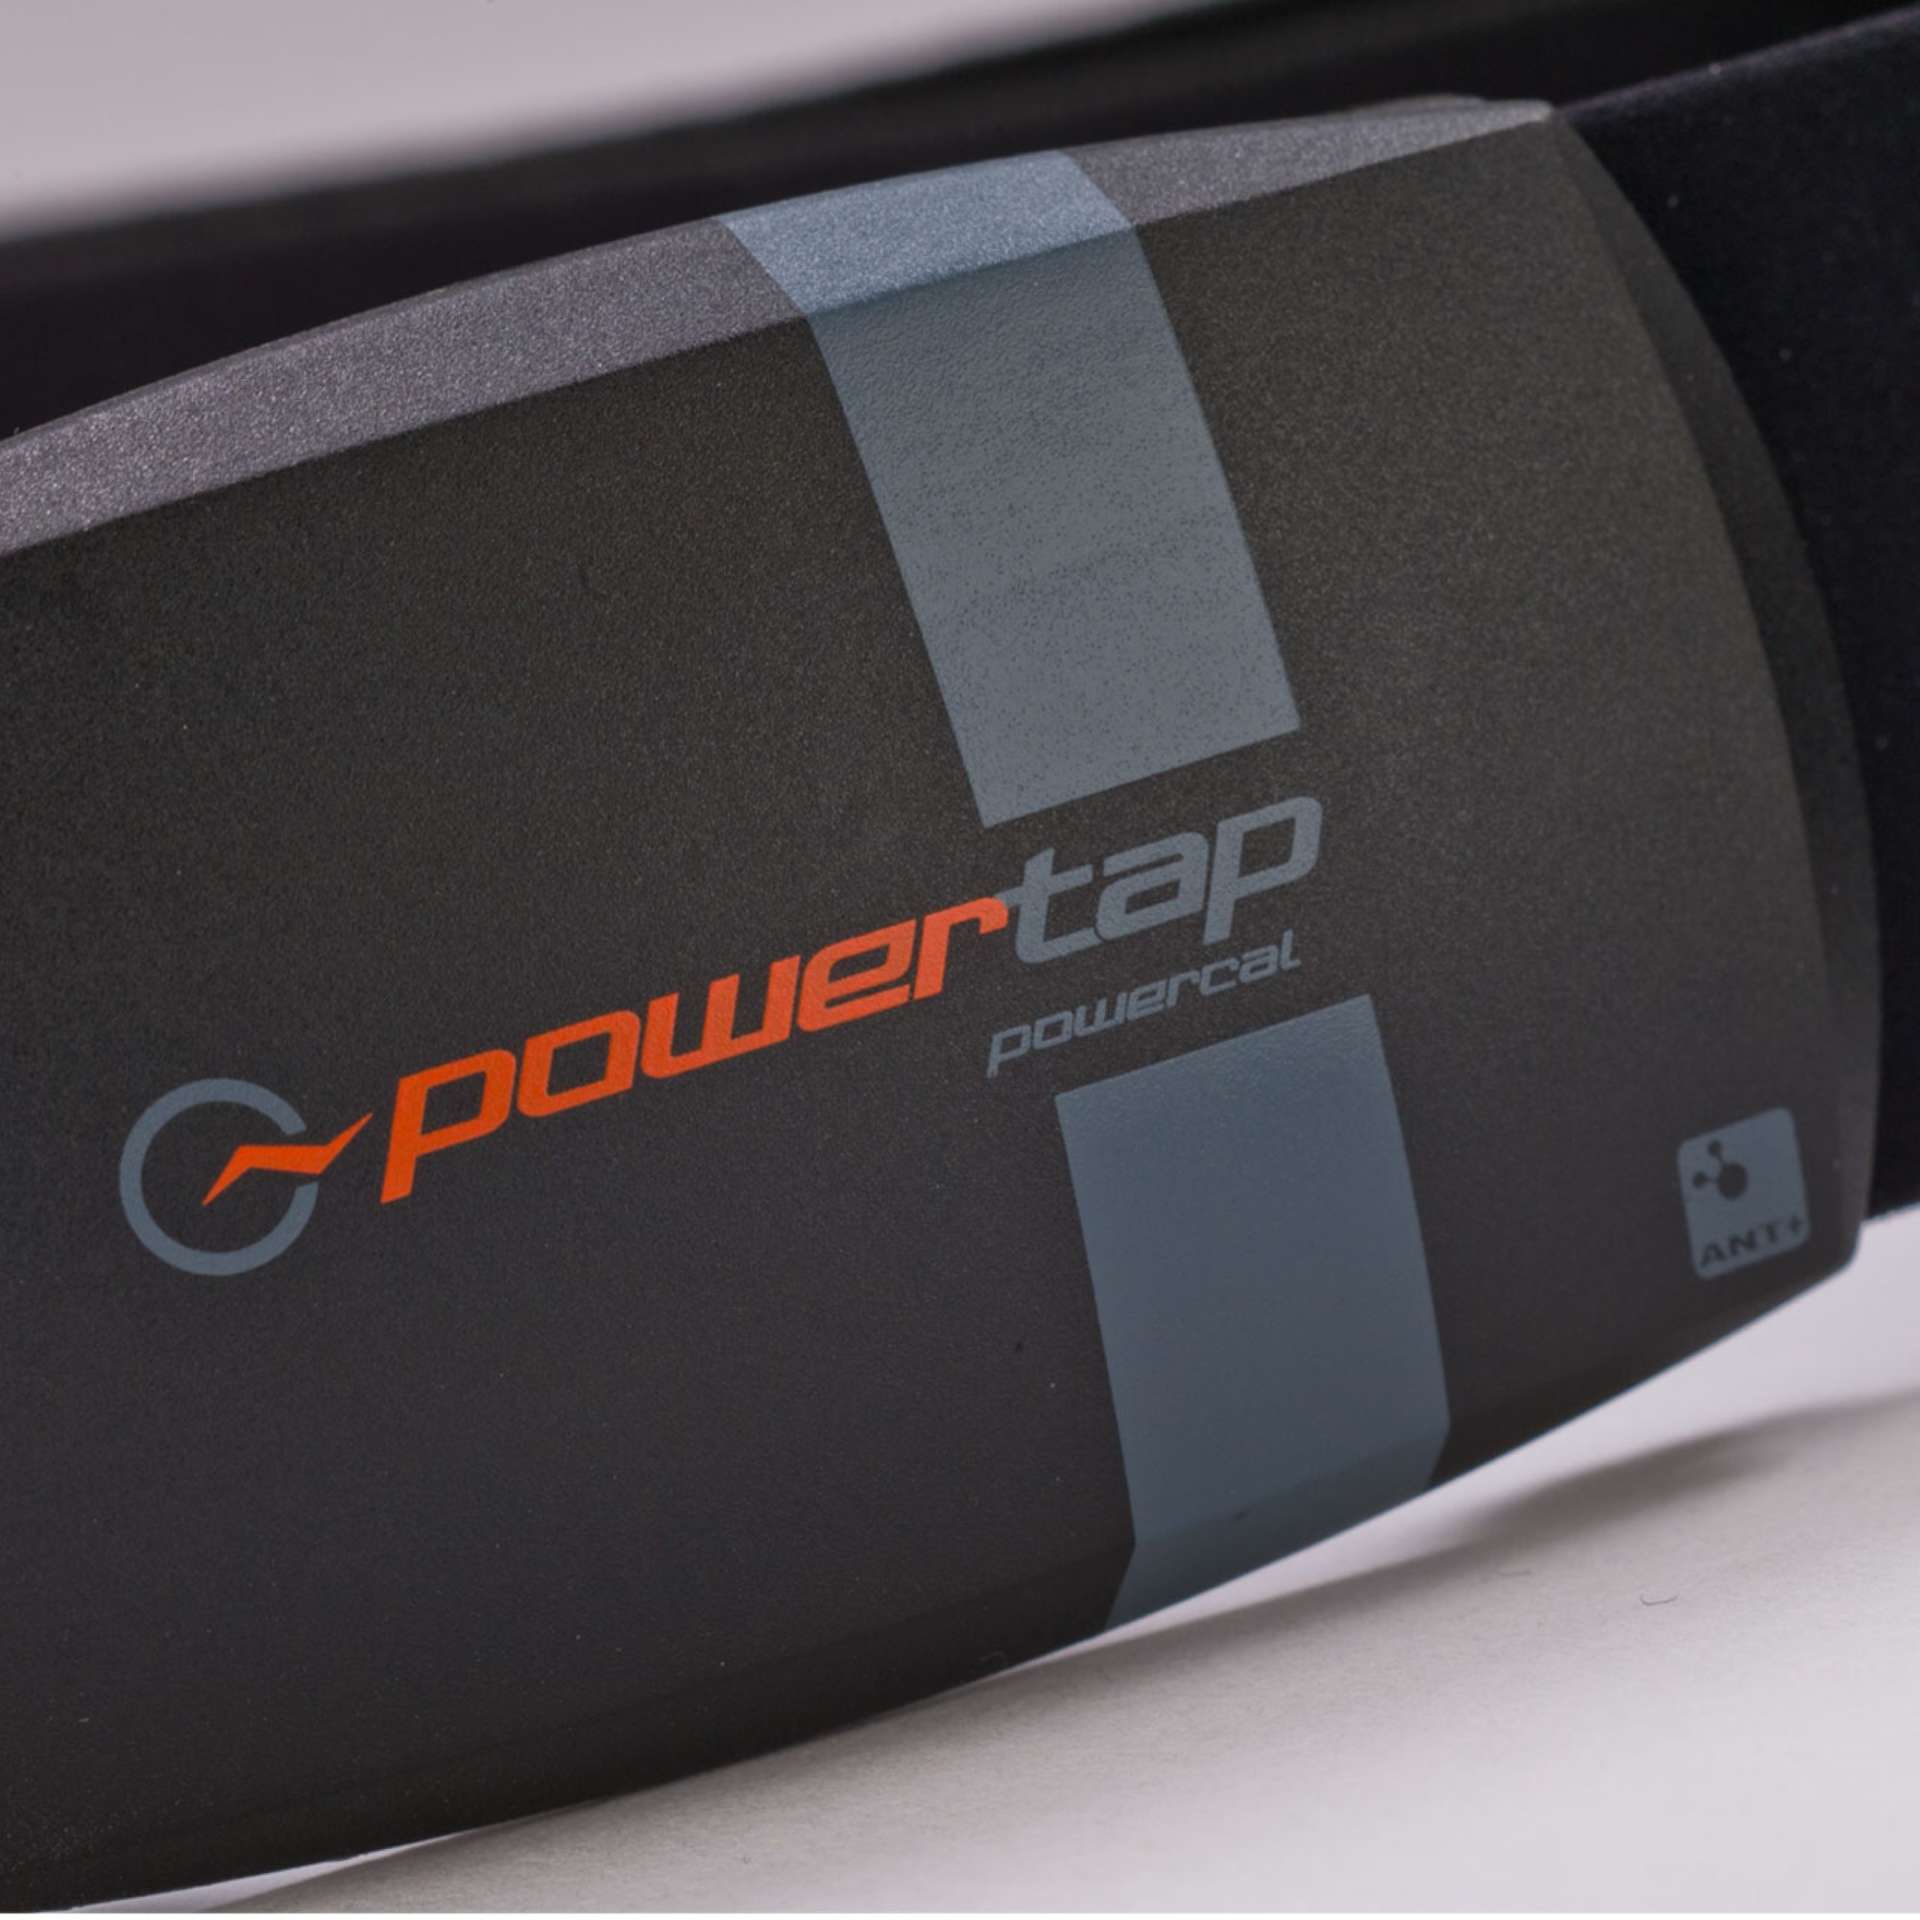 Powertap PowerCal HR Bluetooth Smart